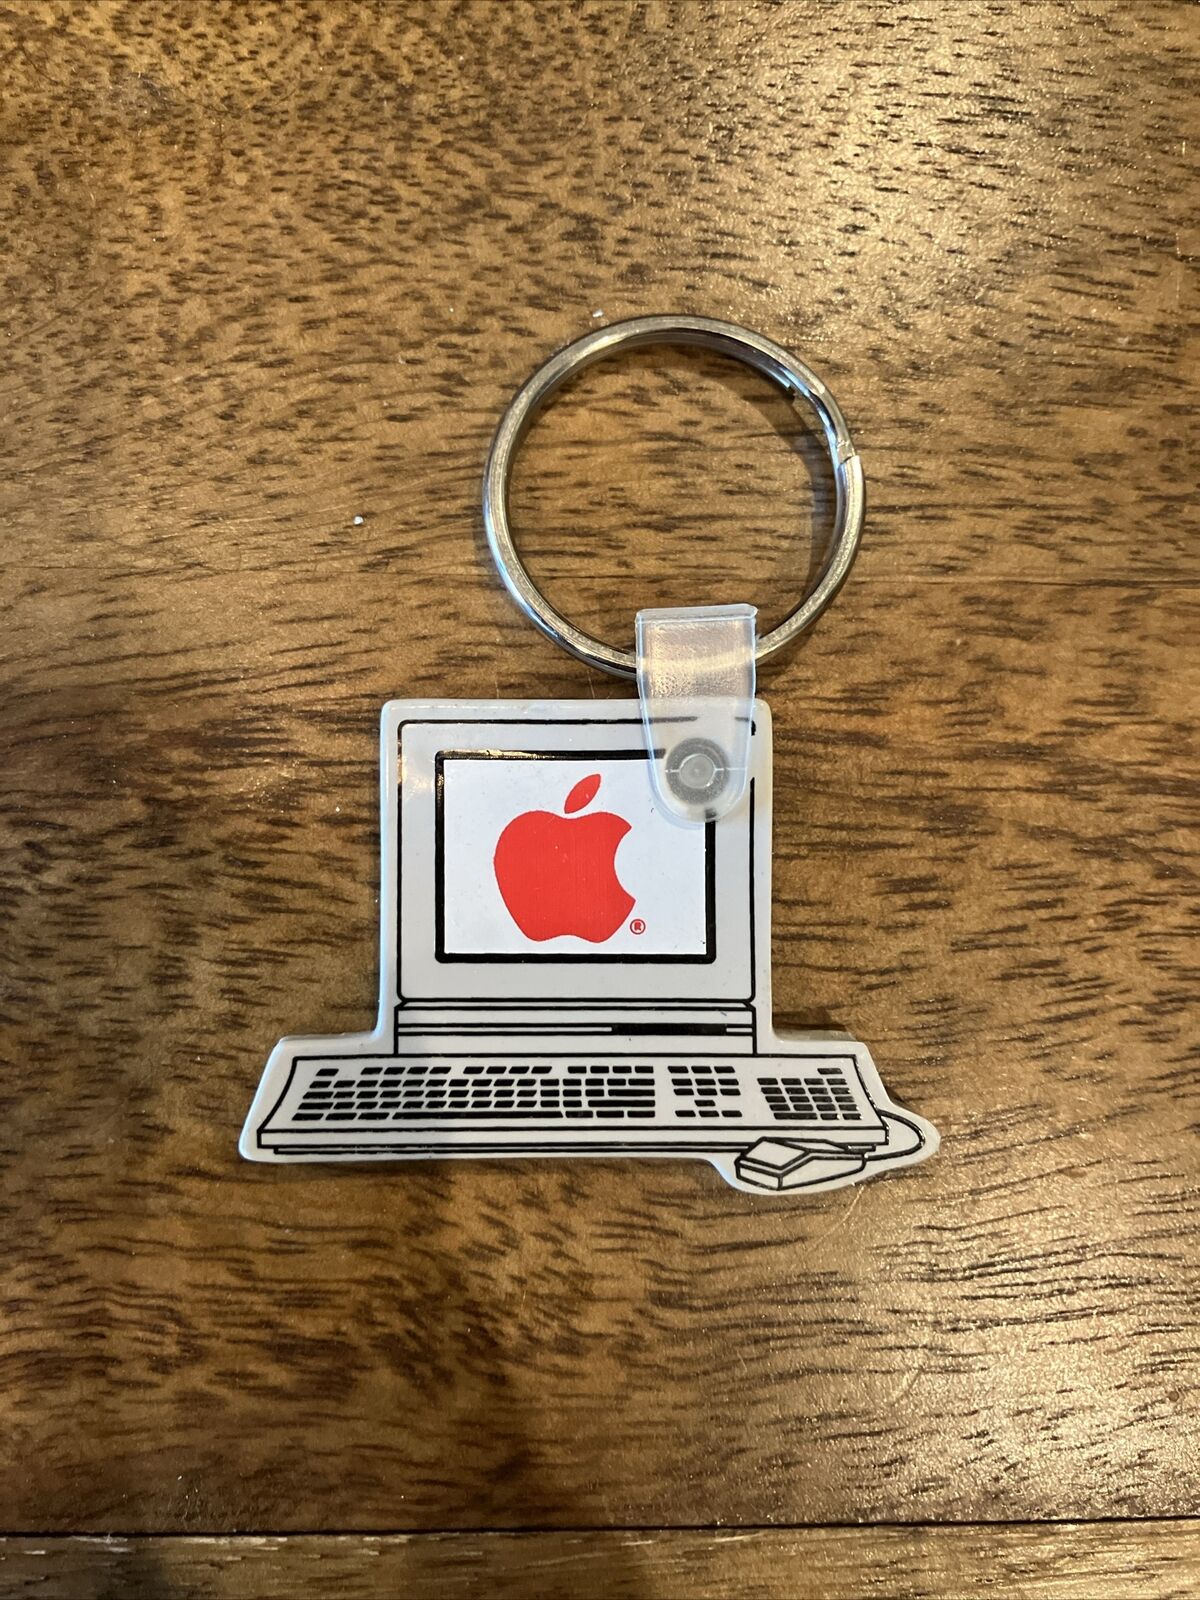 Rare, Vintage Apple Mac OS Rainbow Keychain - 1990/1980s Vintage